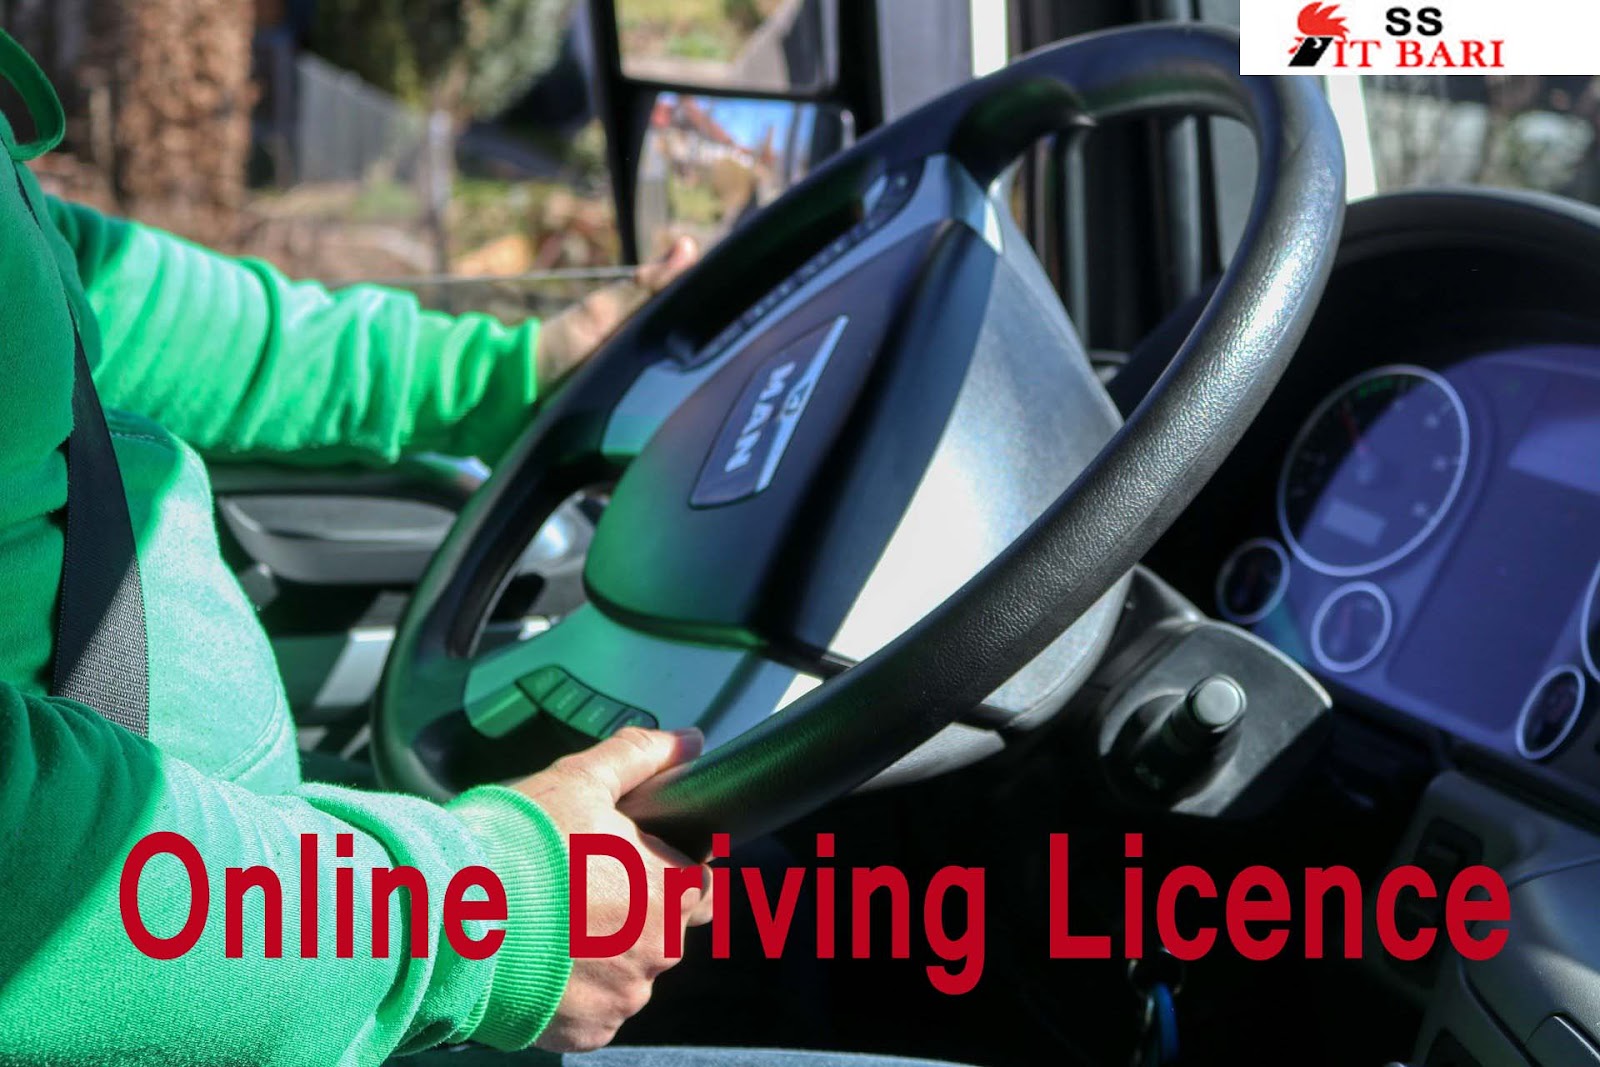 ড্রাইভিং লাইসেন্স করার নতুন নিয়ম ২০২২।Online Driving Licence